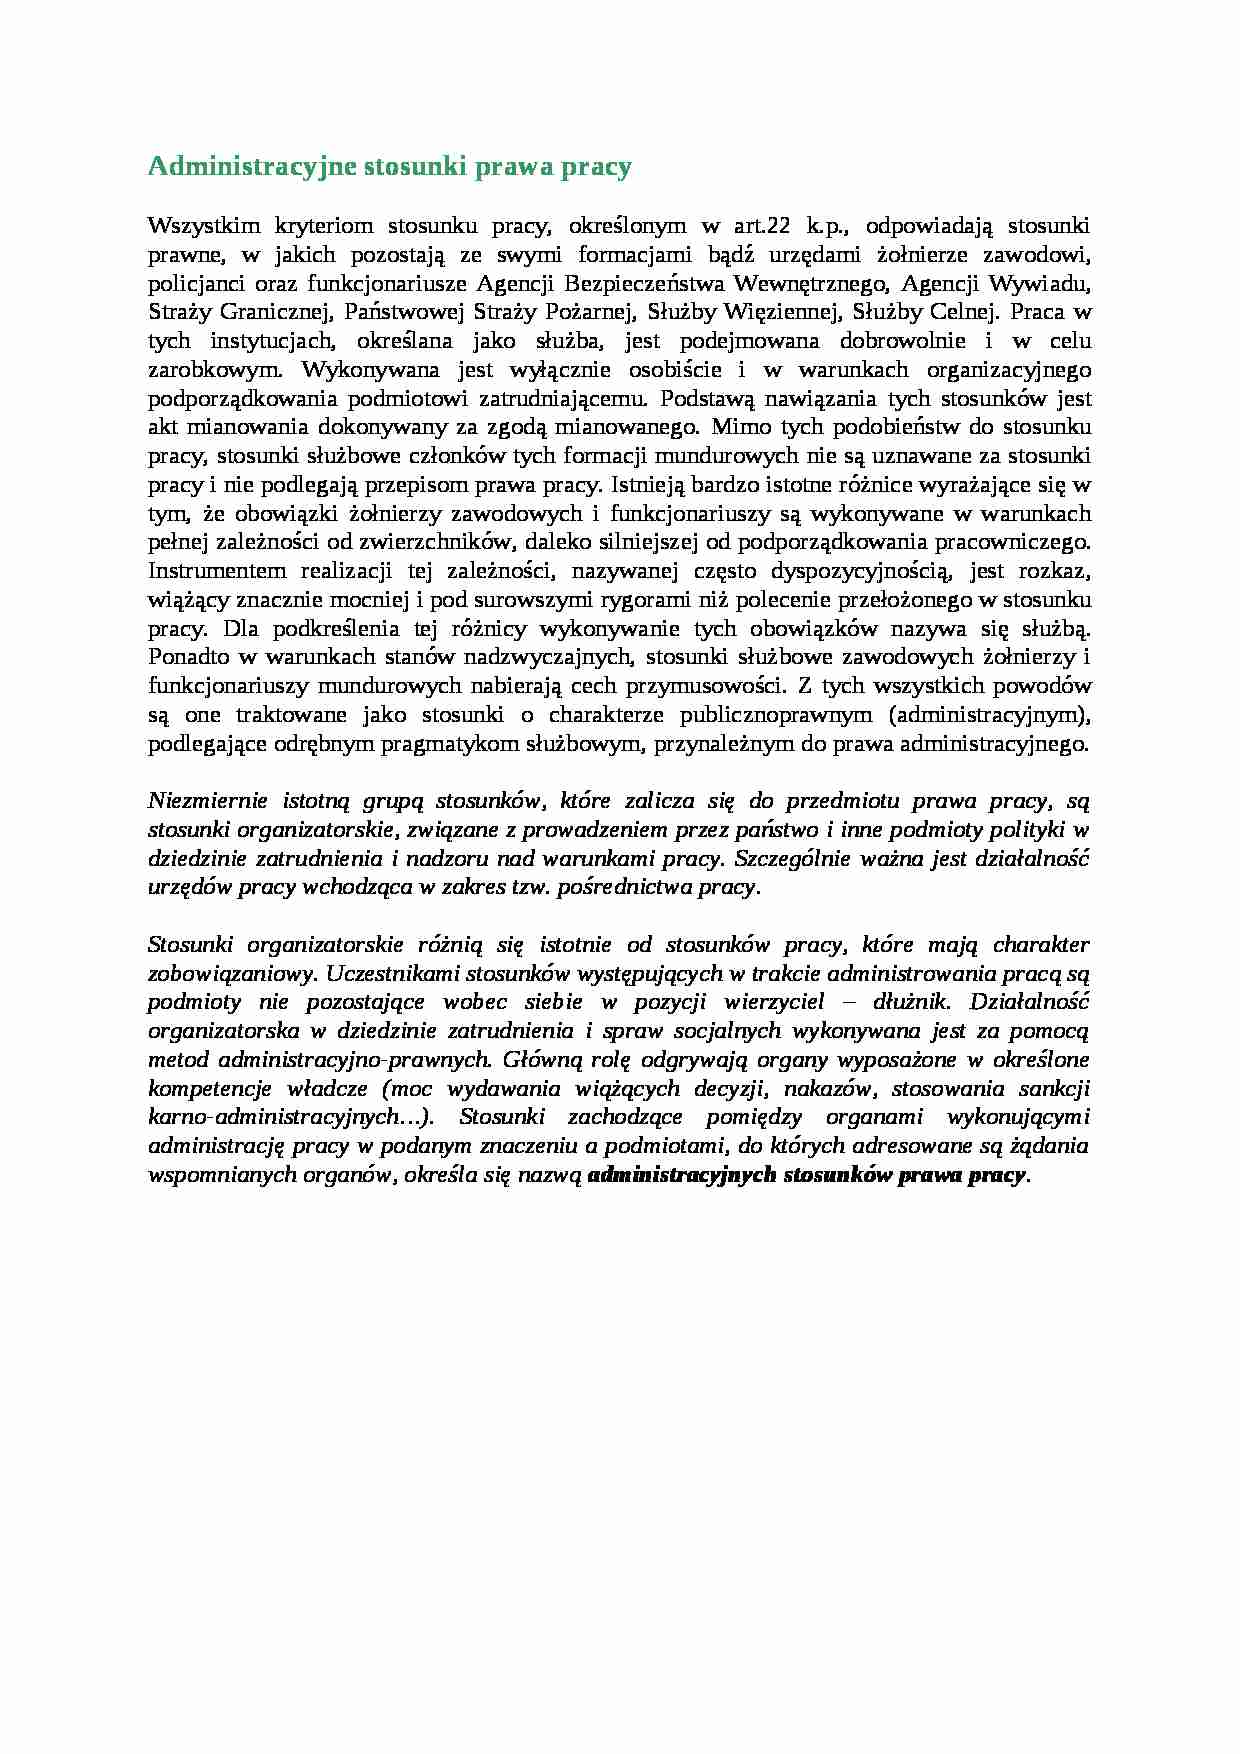 Administracyjne stosunki prawa pracy - omówienie - strona 1